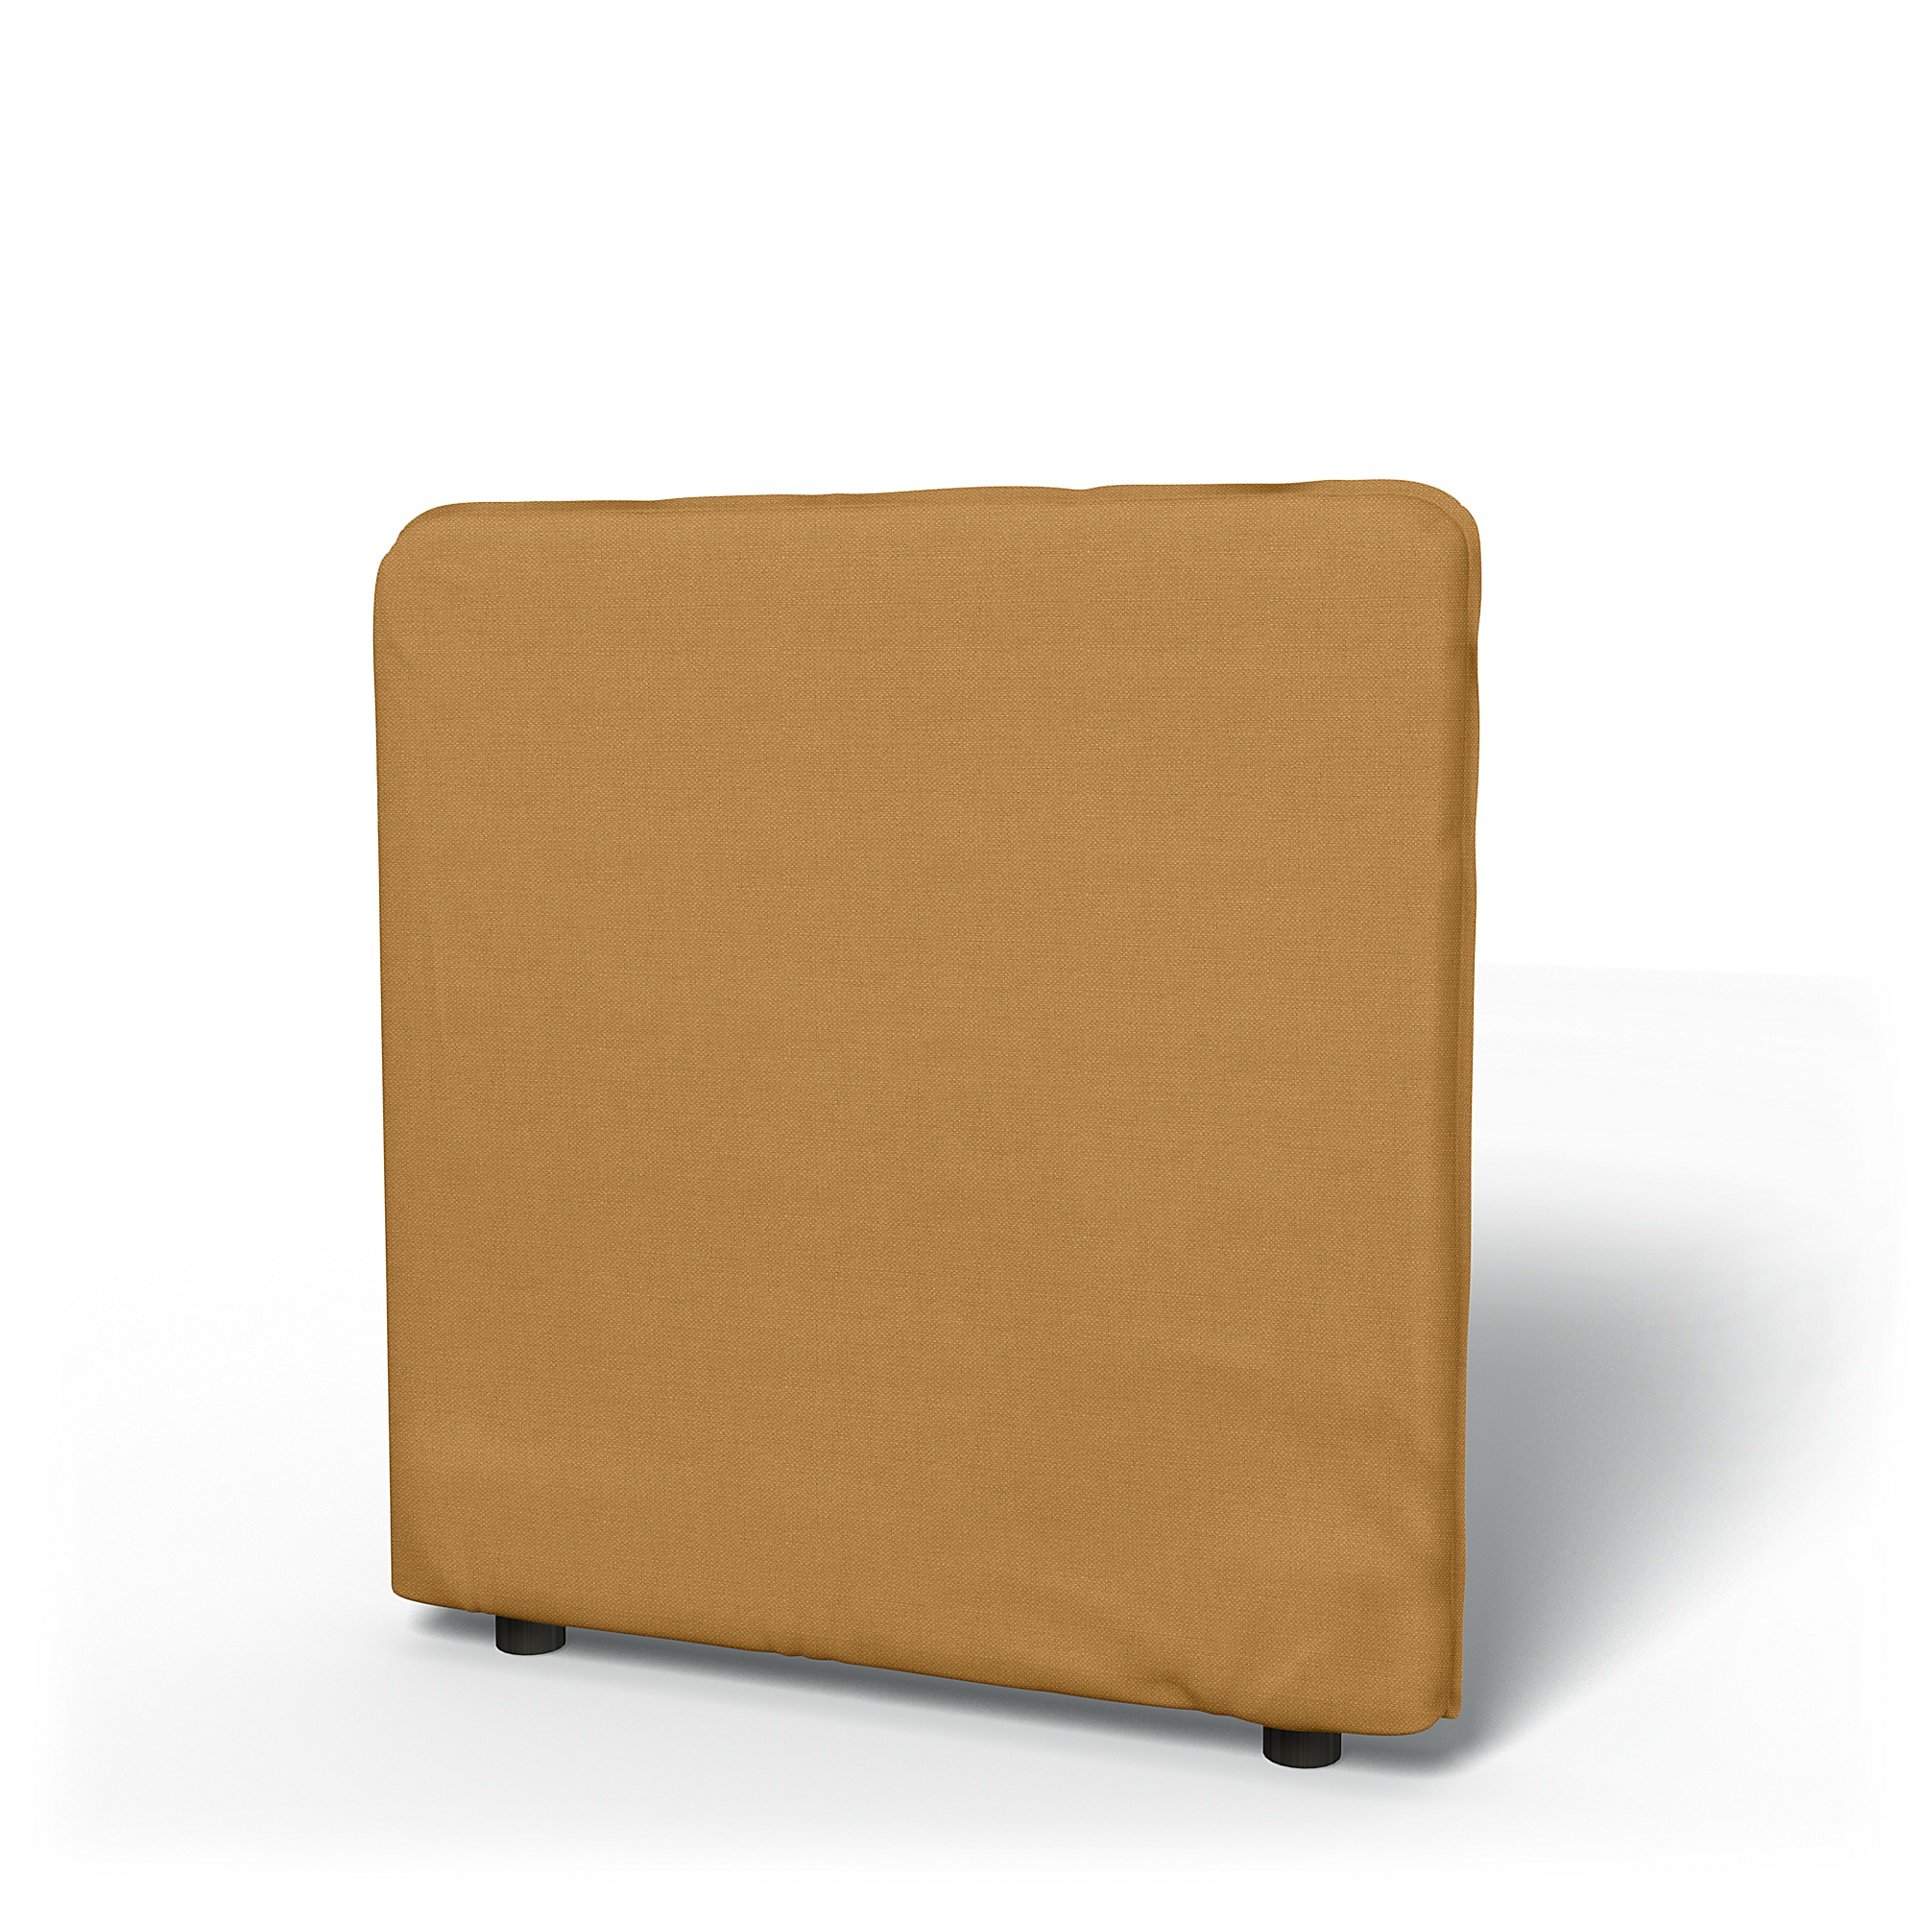 IKEA - Vallentuna Low Backrest Cover 80x80cm 32x32in, Mustard, Linen - Bemz